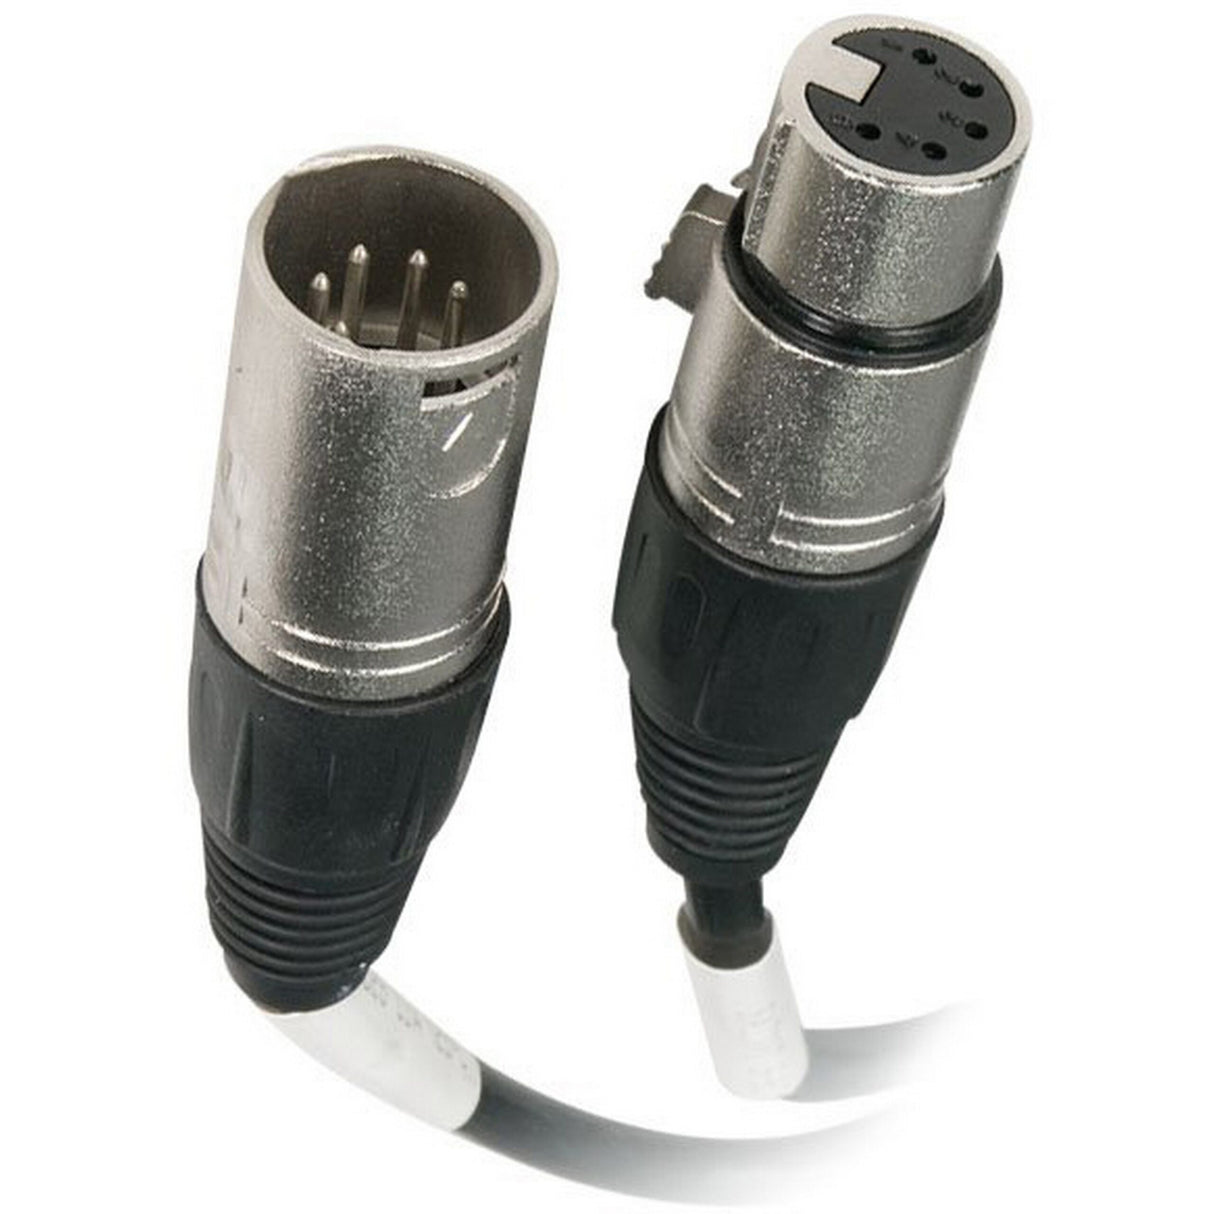 Chauvet DMX5P25FT 5-Pin DMX Cable, 25-Foot